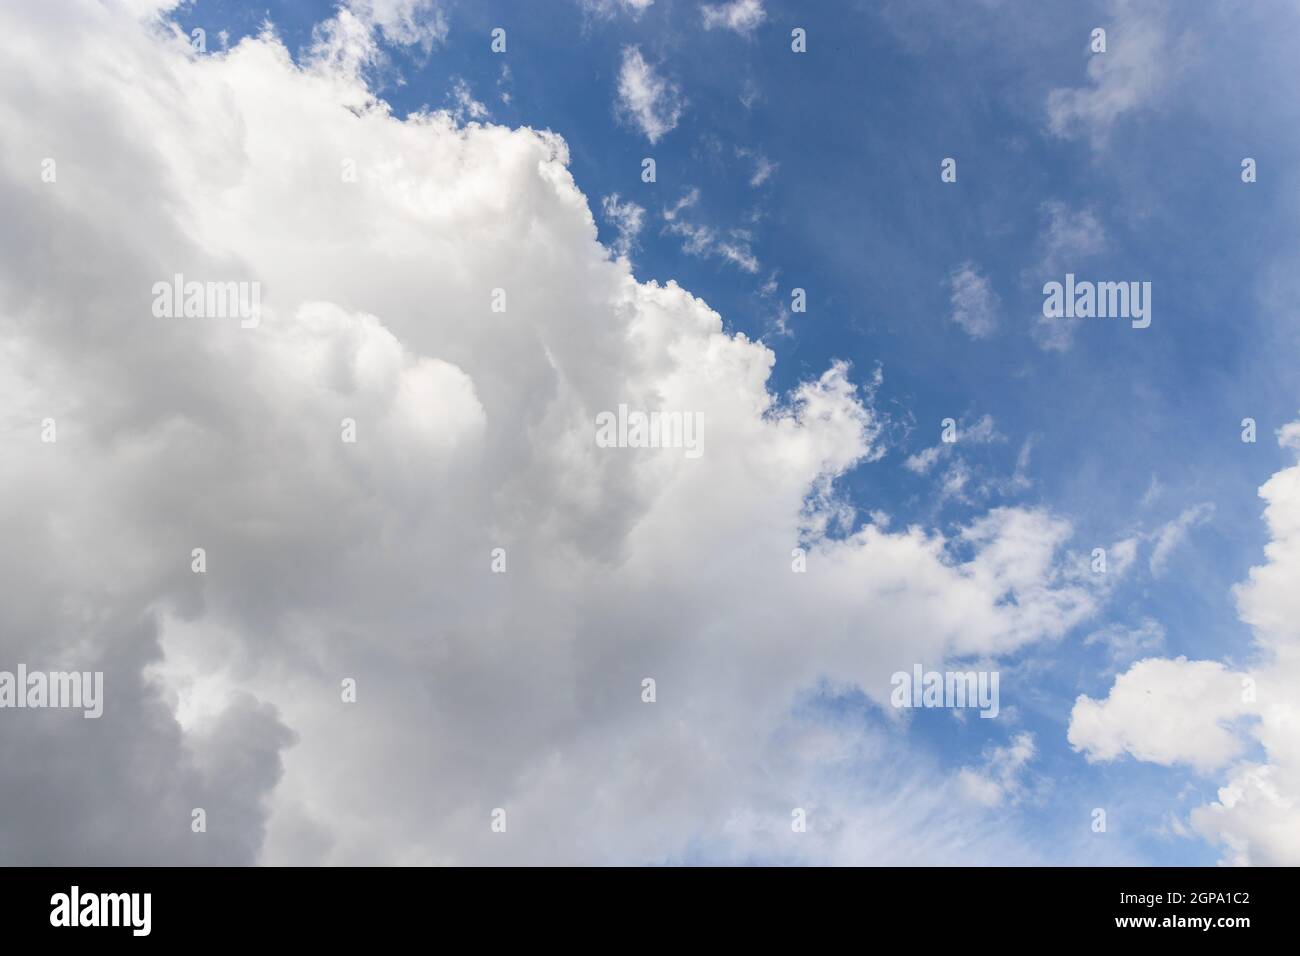 Fond bleu ciel avec cumulus de nuages blancs et gris. Le mauvais temps arrive. Banque D'Images